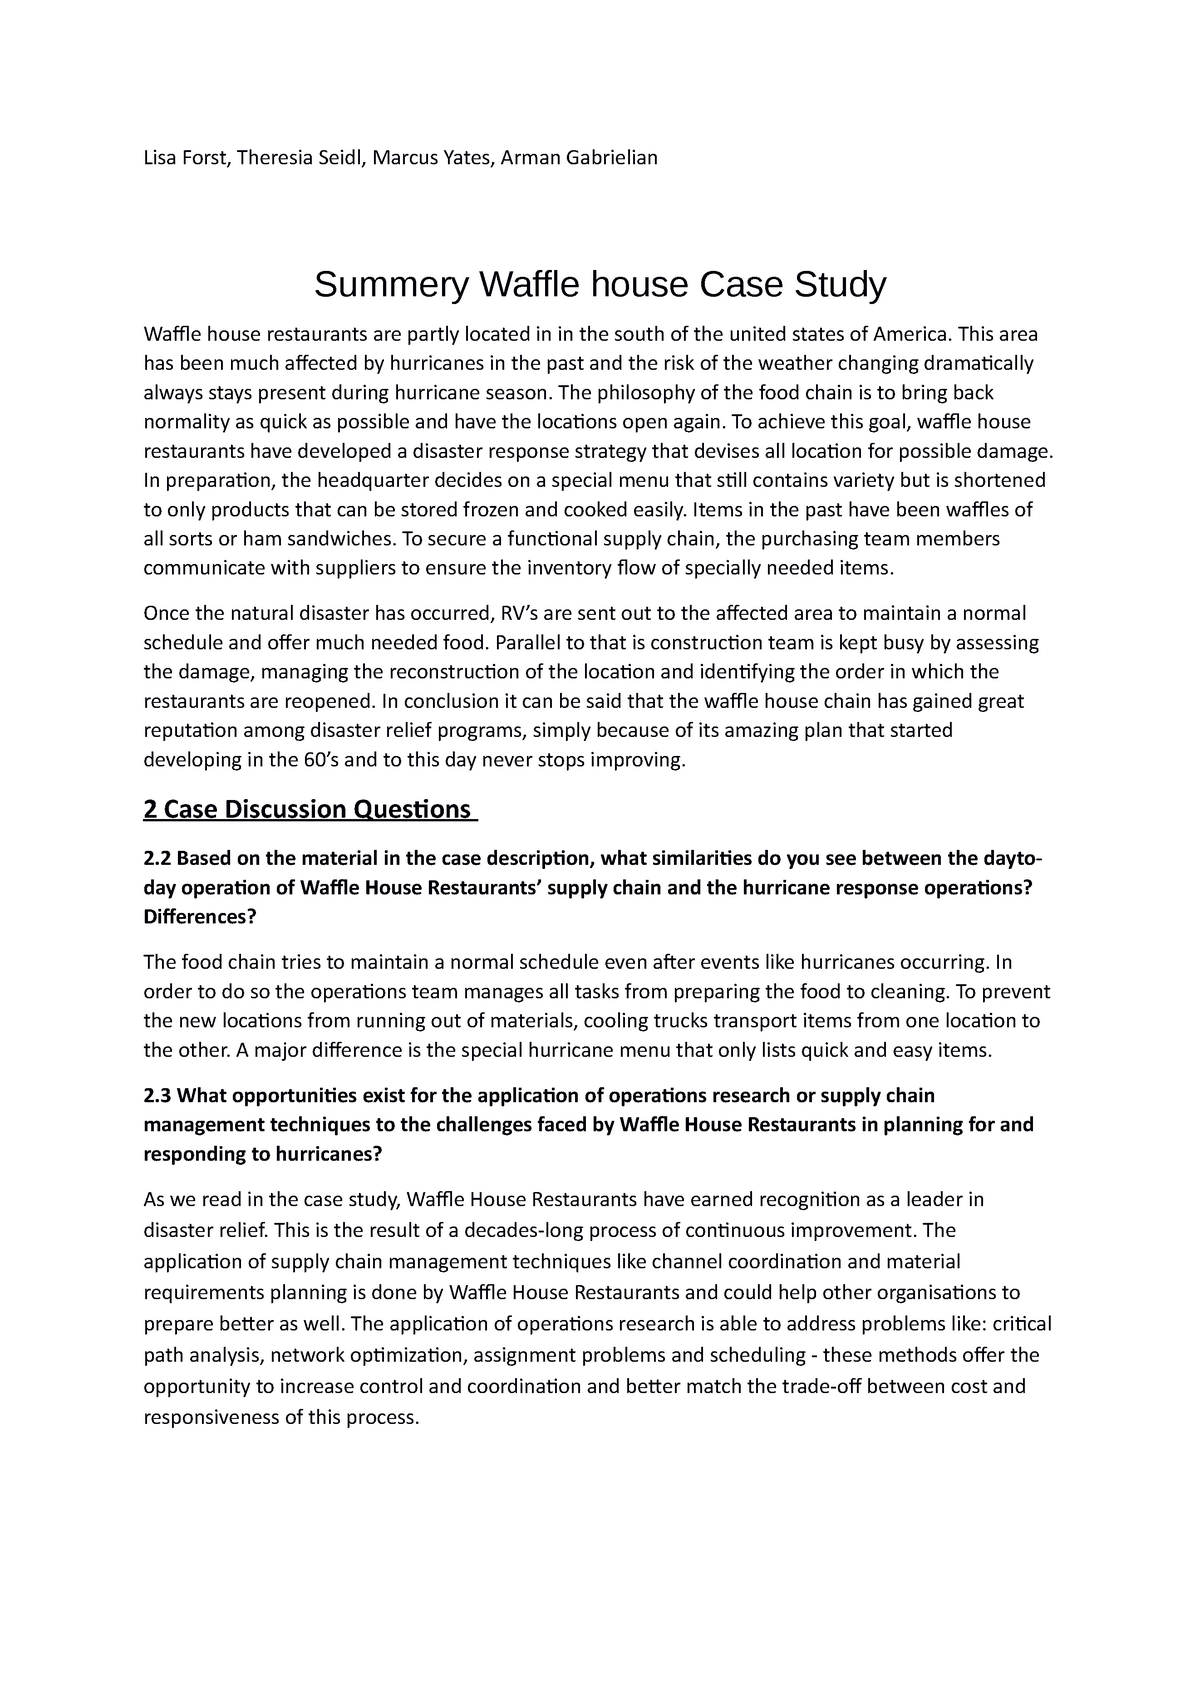 waffle house case study